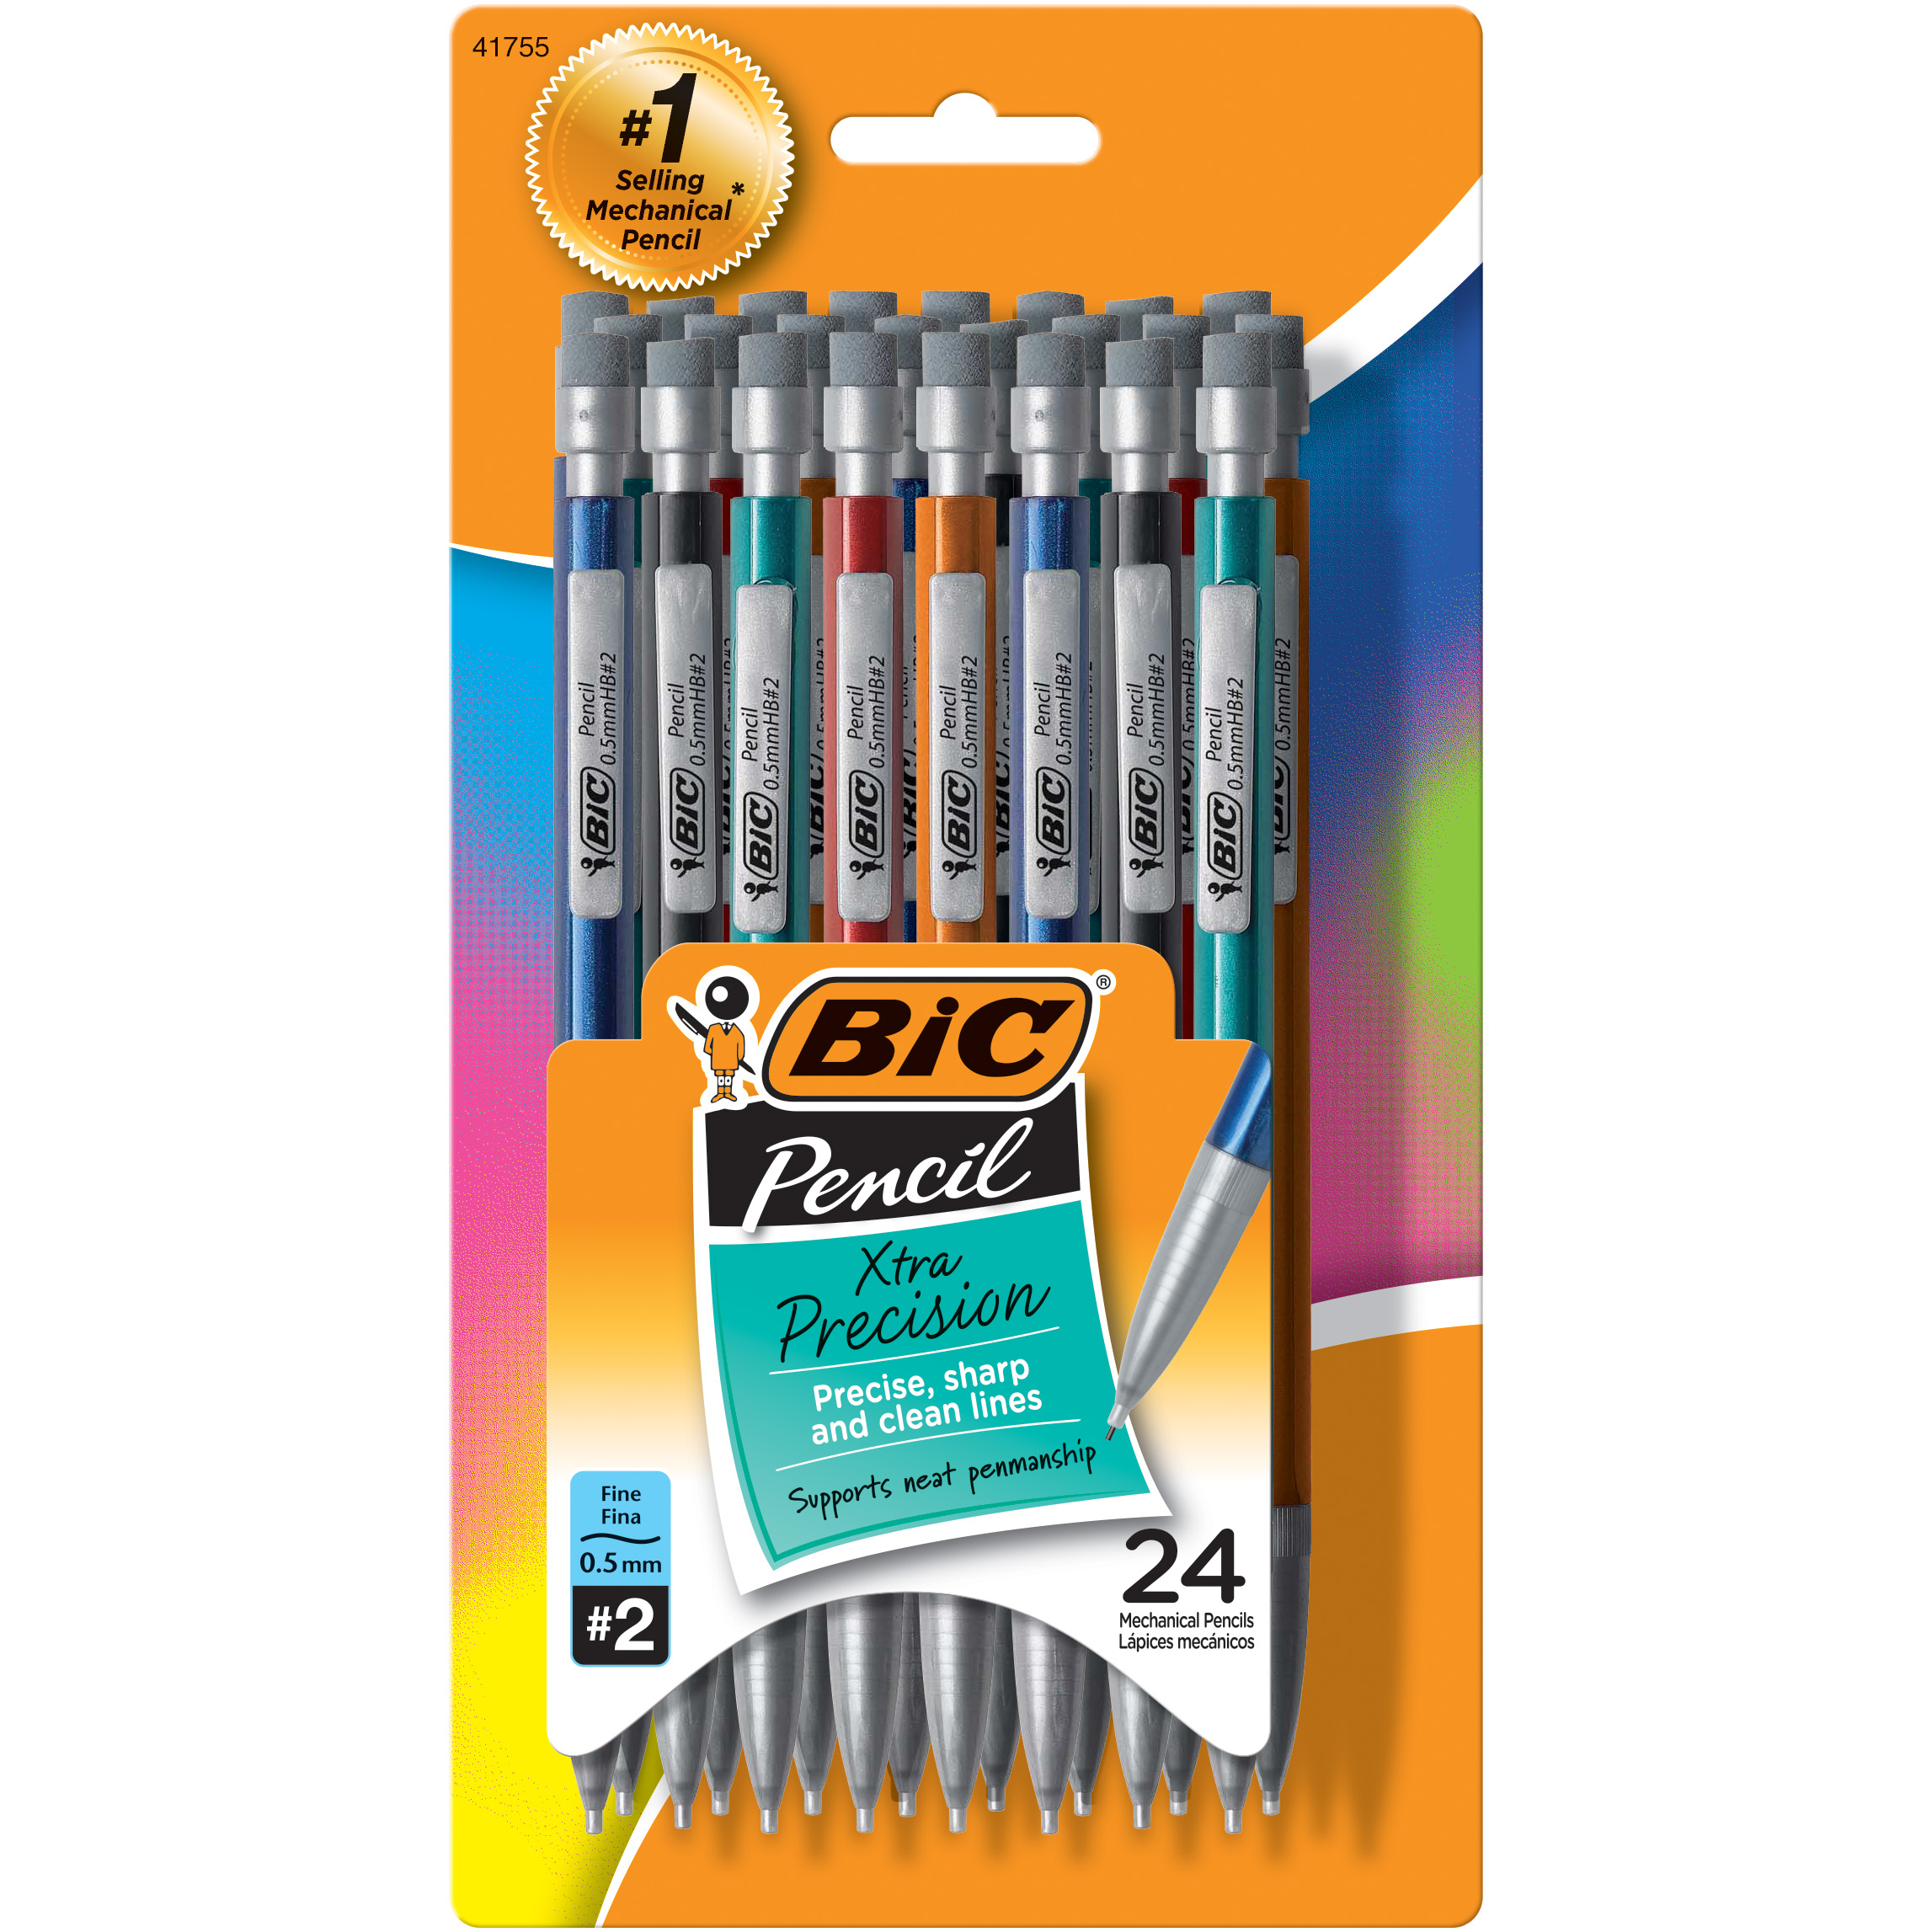 BIC Xtra-Precision Mechanical Pencil, Metallic Barrels, #2 Pencil, 24 Count - image 3 of 12